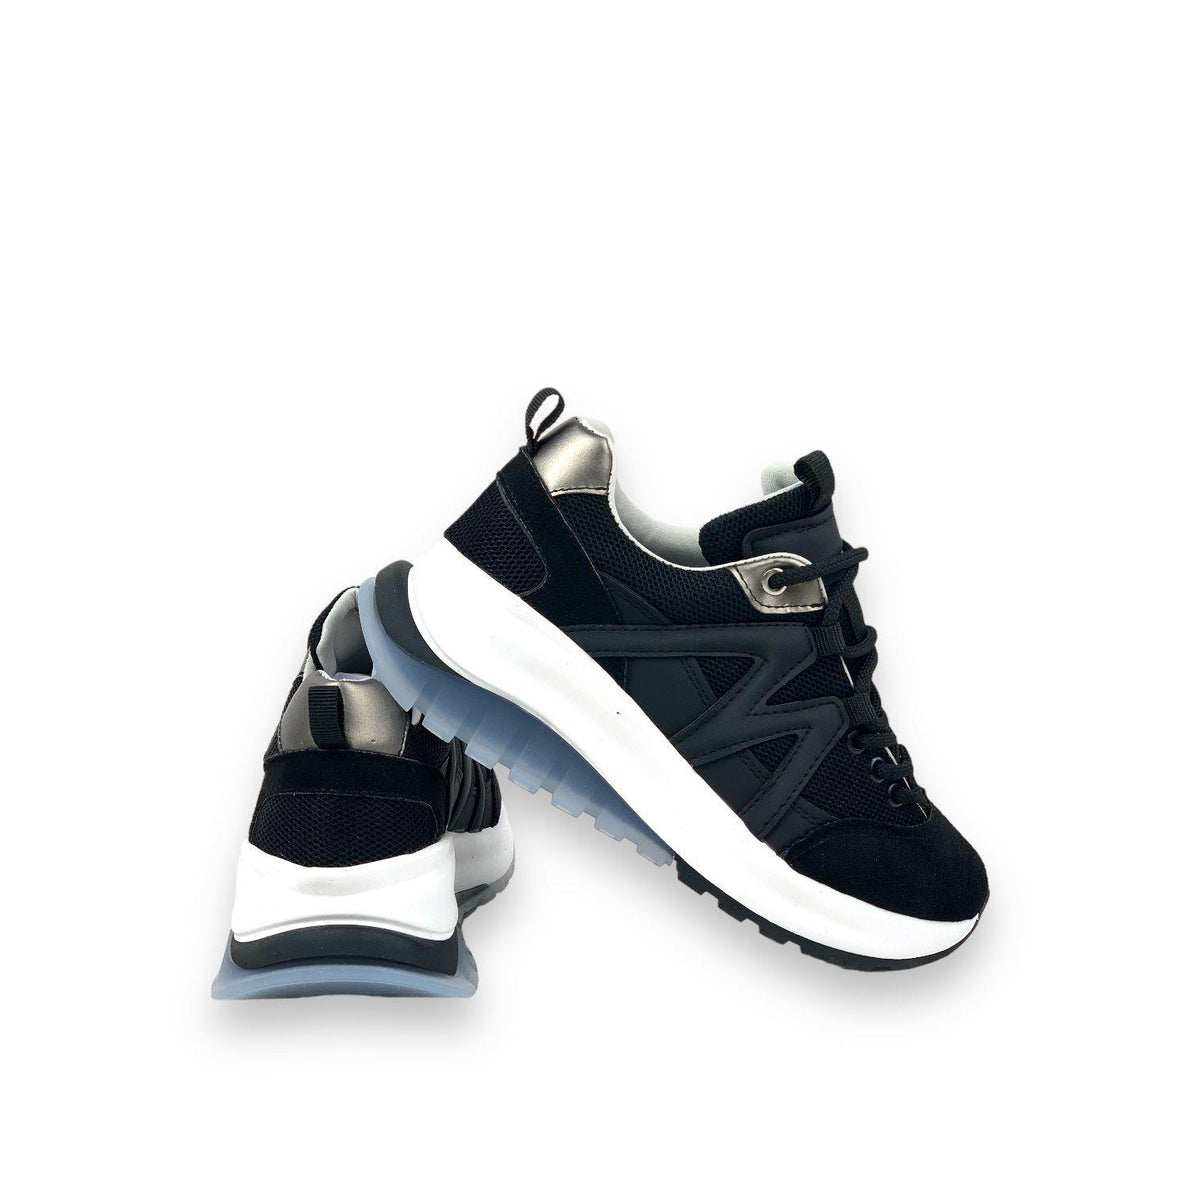 Women's Mafy Black Comfort Sole Daily Walking Sneaker 4 Cm - STREETMODE™